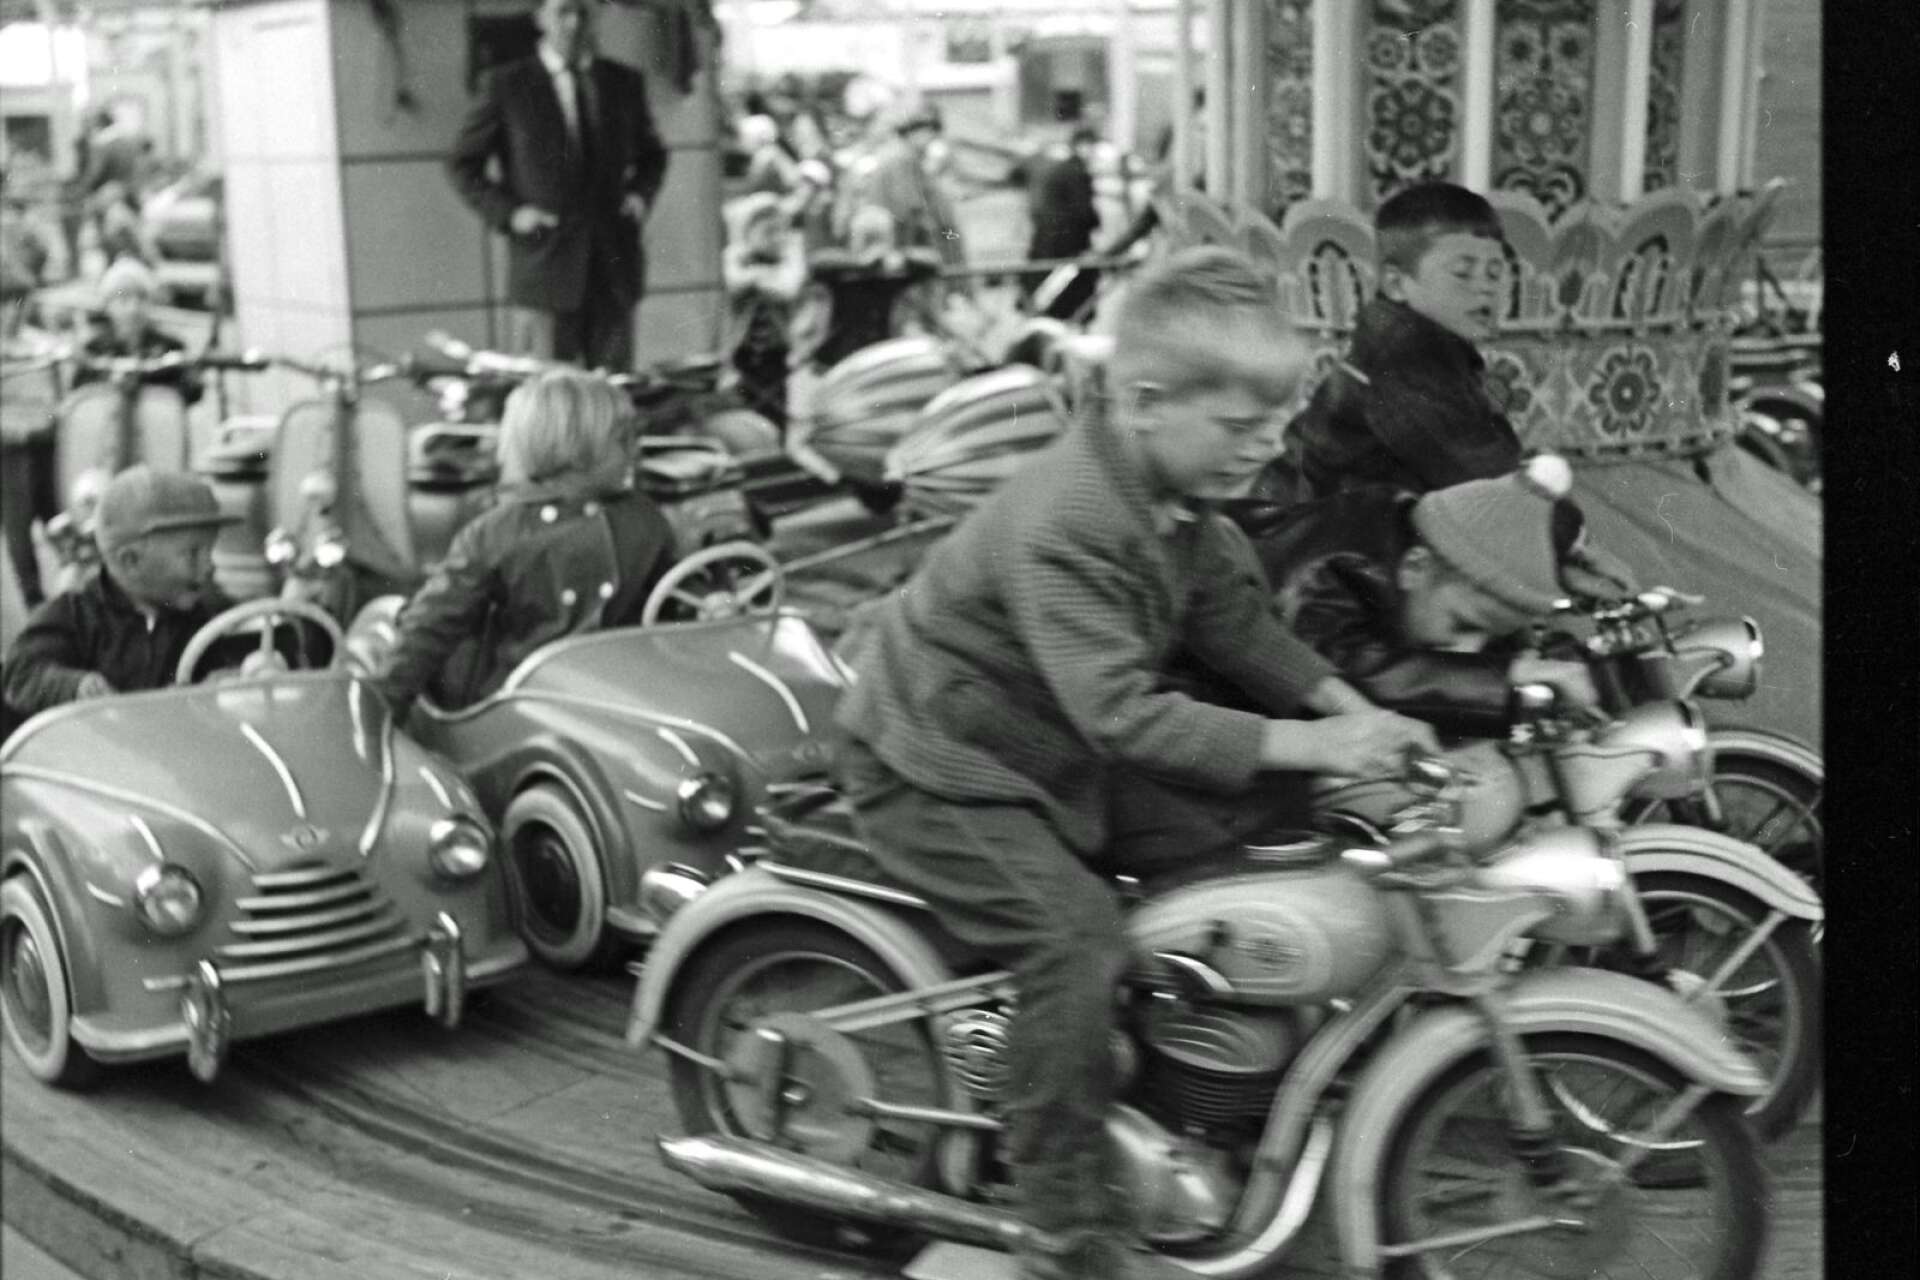 Det var mycket att provåka när tivolit kom till Nytorget. Bilden är från 1957. Motorcyklar på karusellen lockade förstås lite extra.